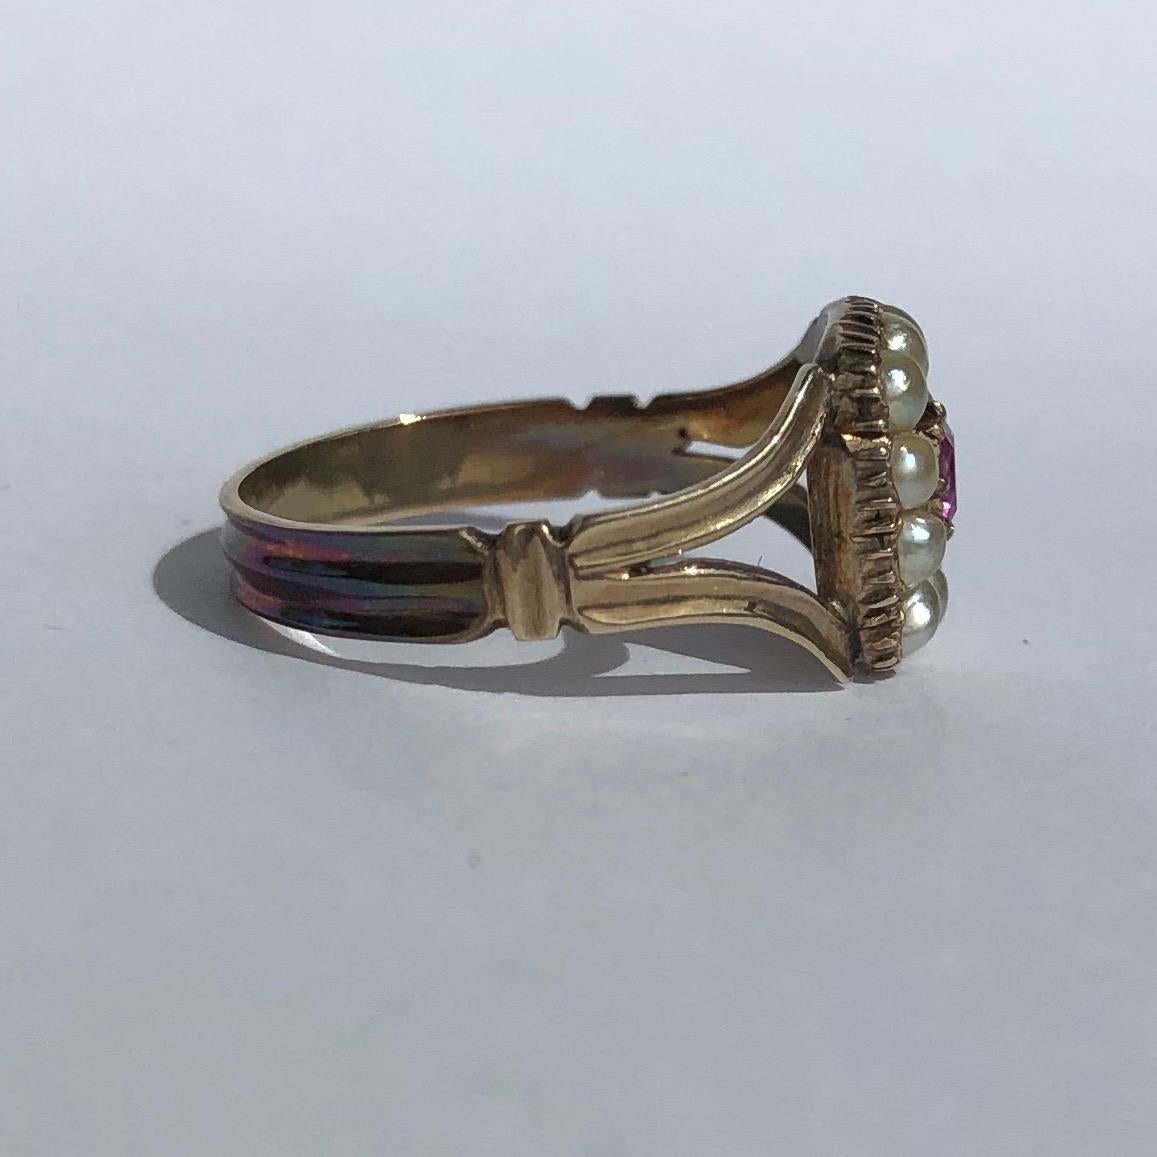 Dieser Ring ist für einen Oldie in hervorragendem Zustand! Der Rubin hat eine schöne rosa Farbe und ist von einem schimmernden Perlenkranz umgeben. Die überschnittenen Schultern führen perfekt zu einem einfachen Band. 

Ringgröße: J oder 4